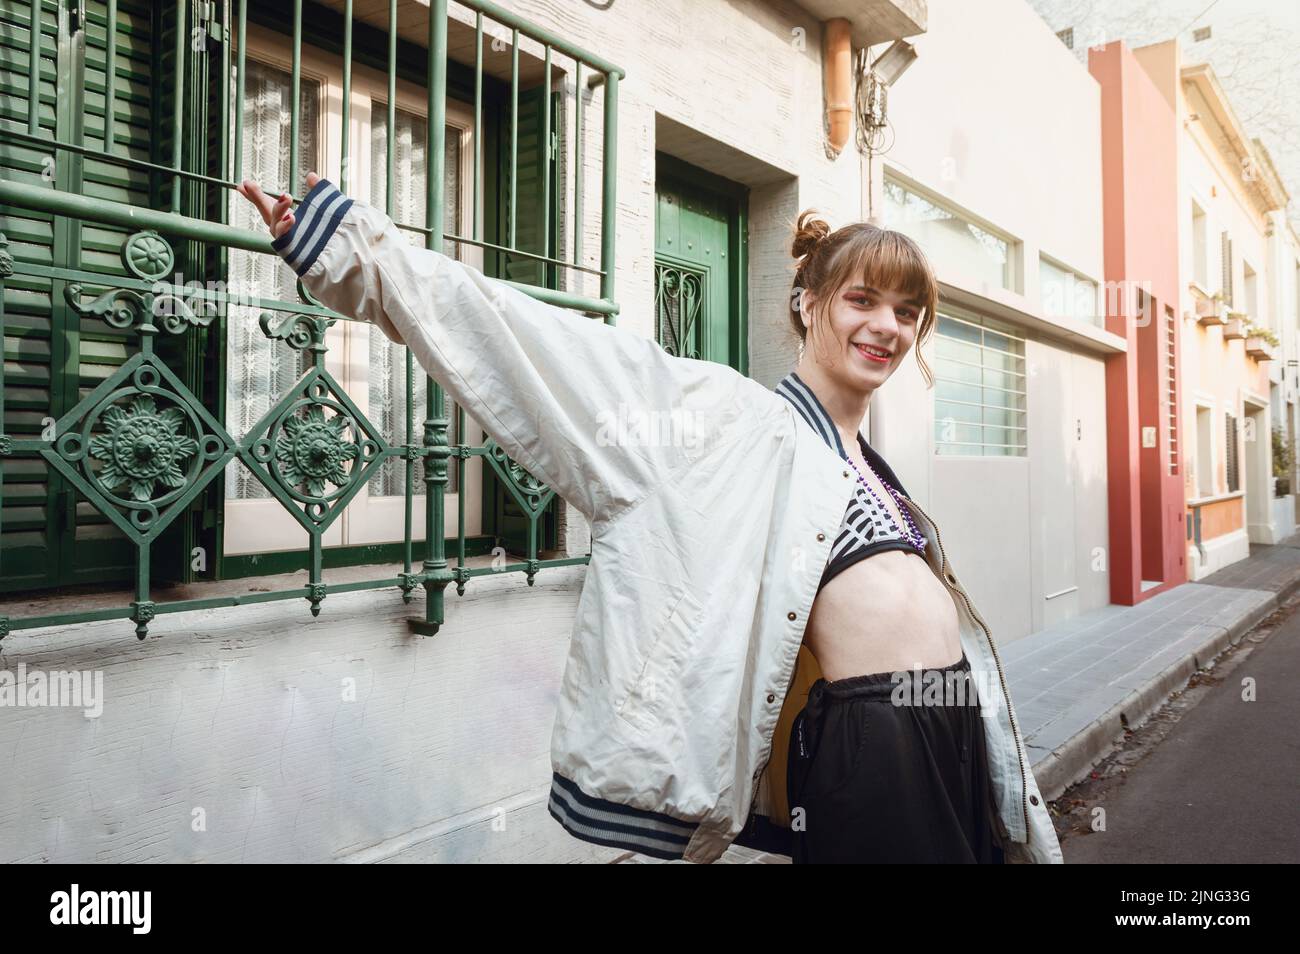 felice giovane donna transgender latina con braccia aperte in piedi lateralmente sulla strada guardando la fotocamera sorridente, in un ambiente urbano con case Foto Stock